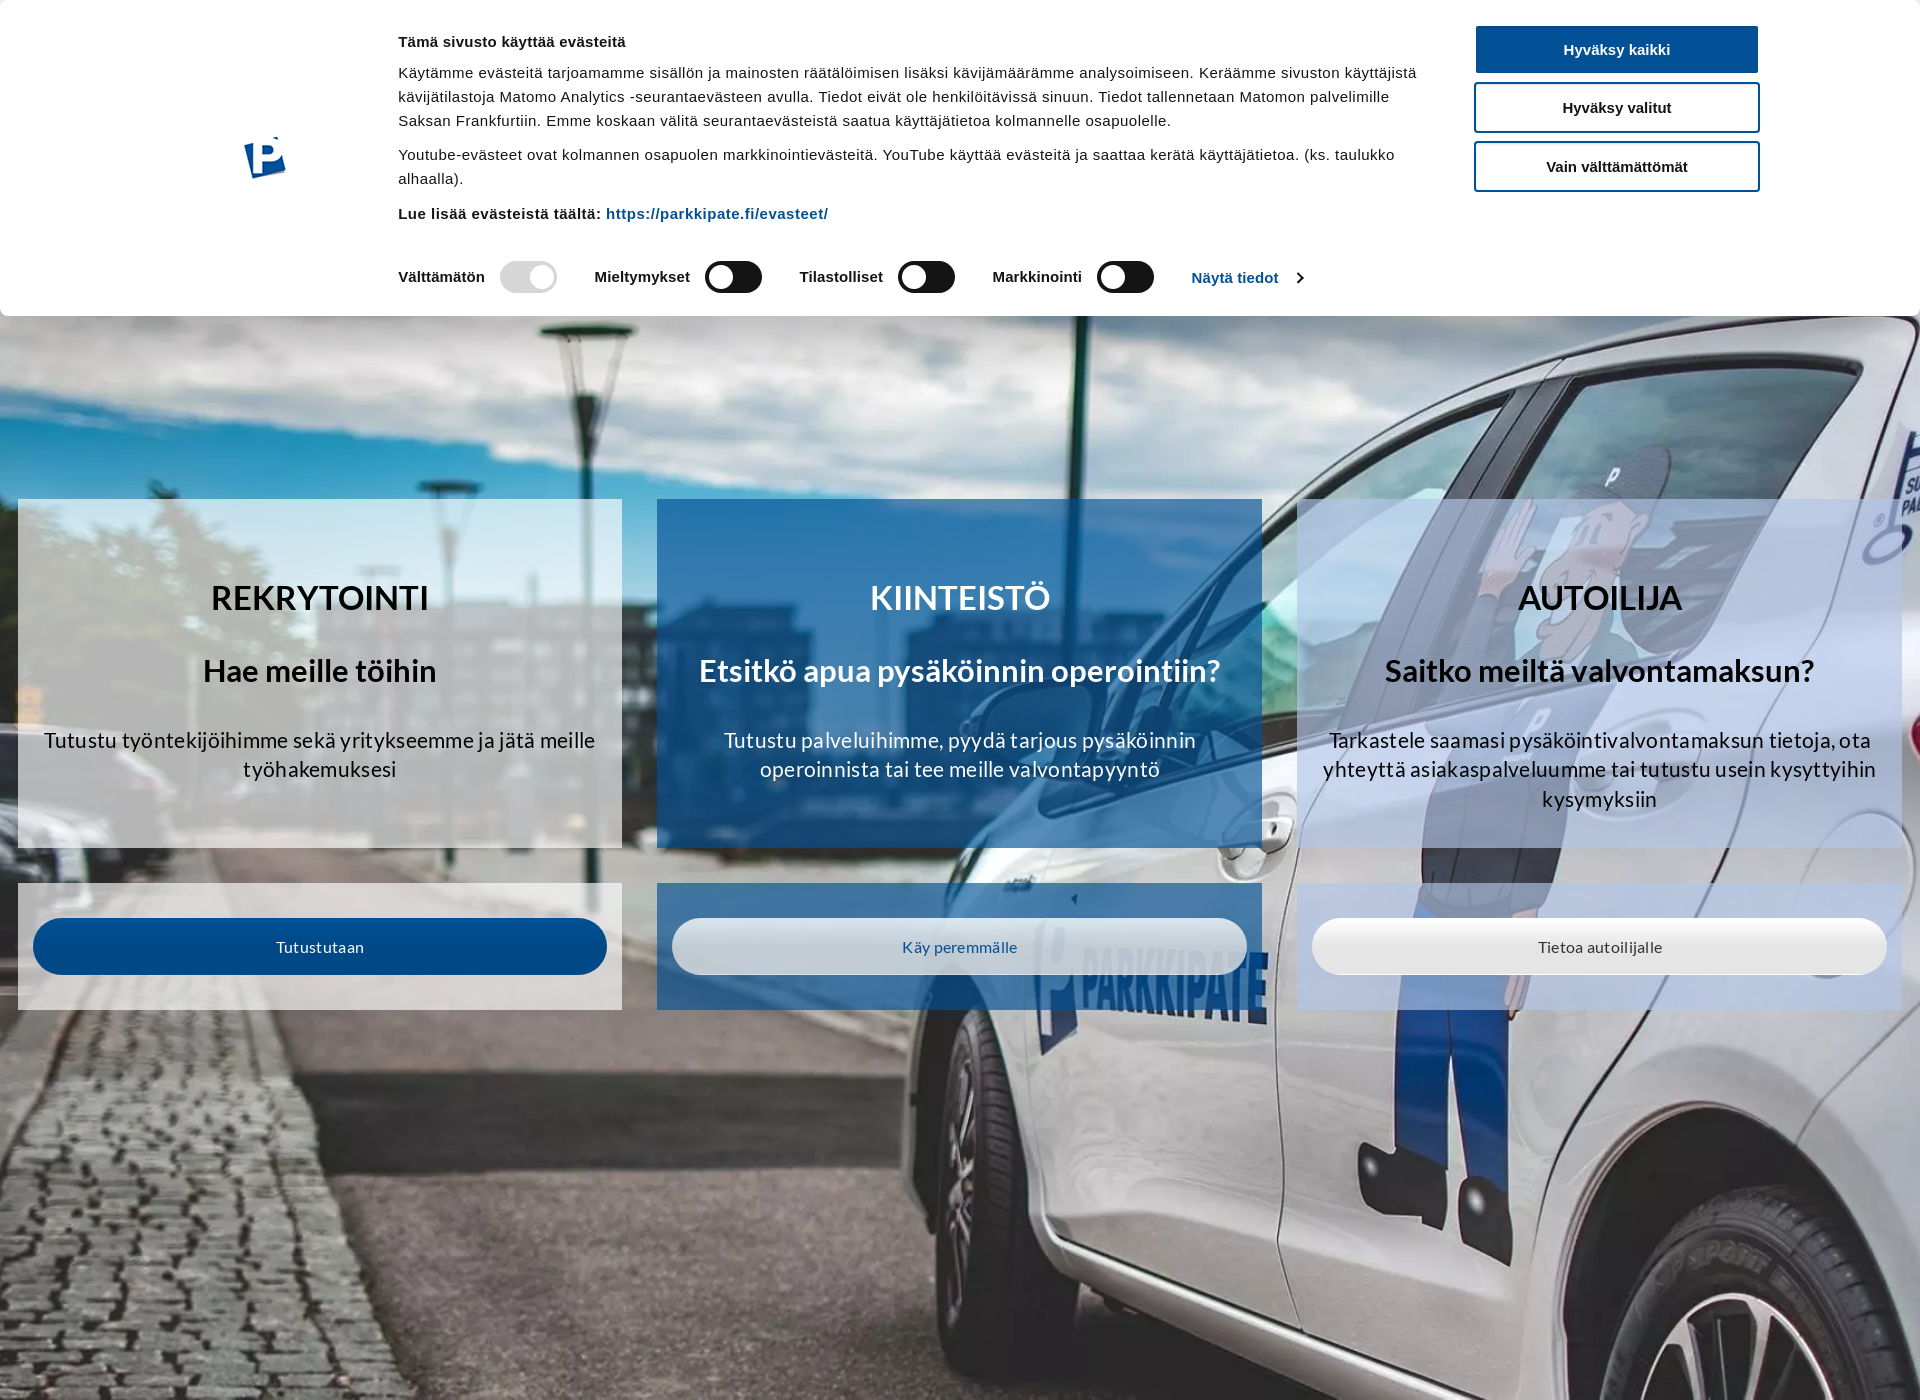 Screenshot for parkkipate.fi